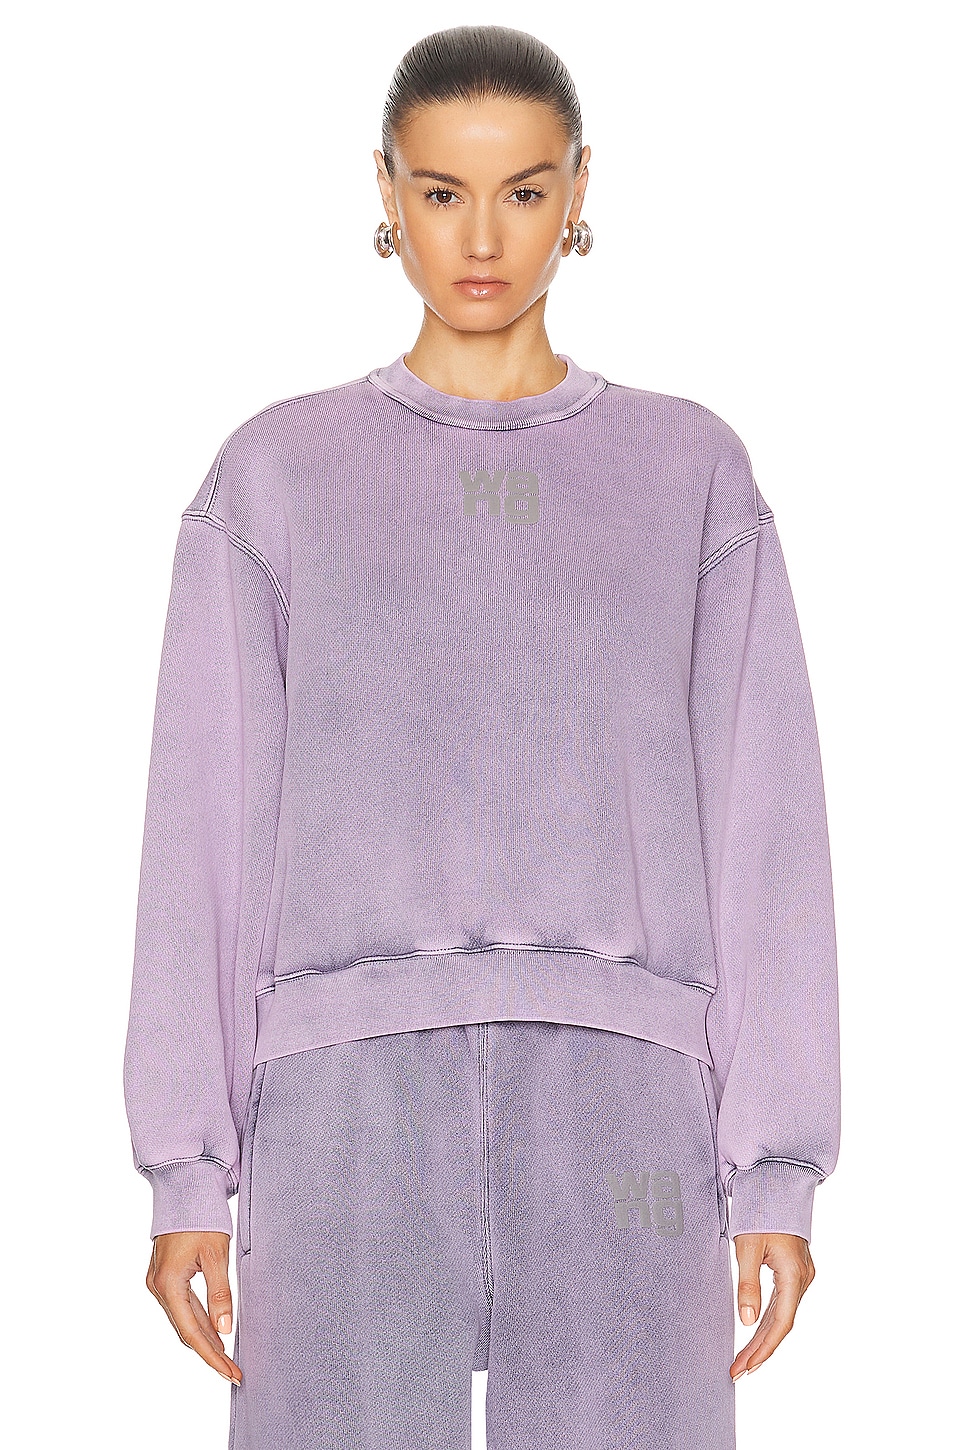 Image 1 of Alexander Wang Essential Terry Crew Sweatshirt in Acid Pink Lavender